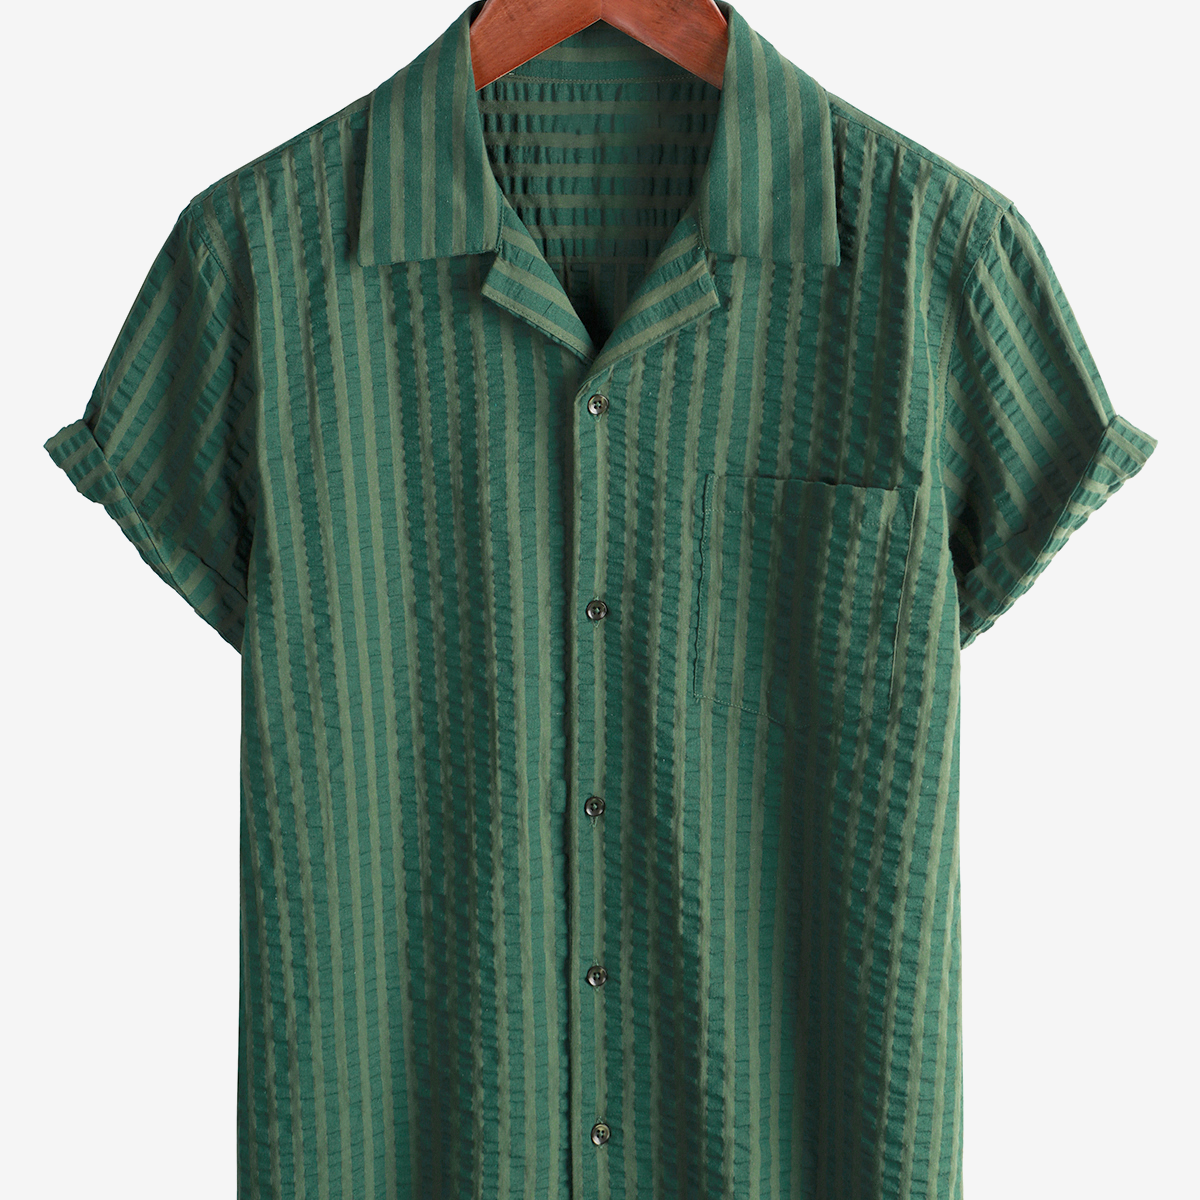 Men's Summer Cuban Collar Short Sleeve Pocket Beach Camp Striped Shirt